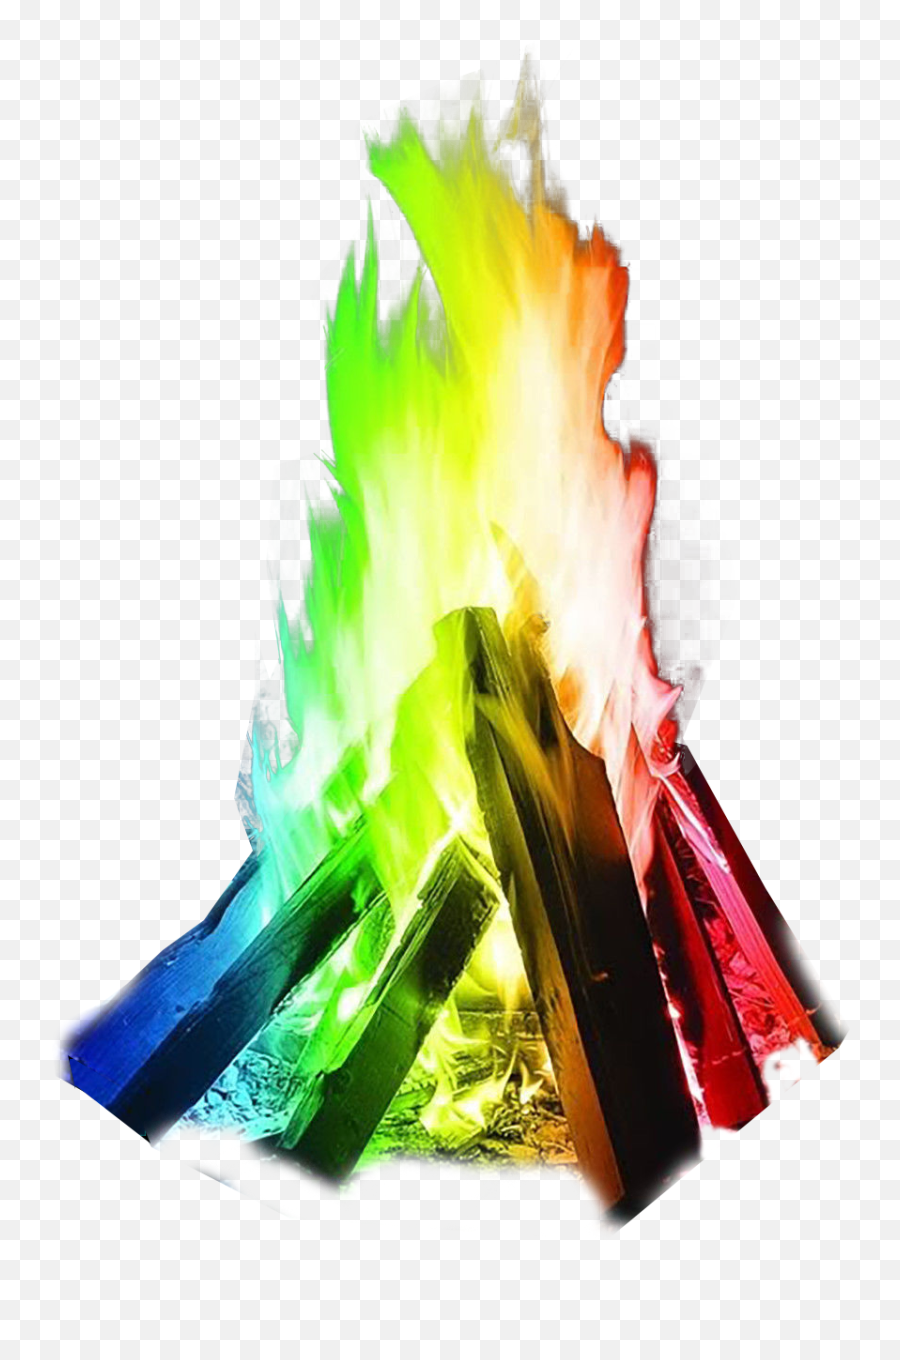 Multicolour Fire Transparent Background - Multicolour Fire Emoji,Fire Transparent Background